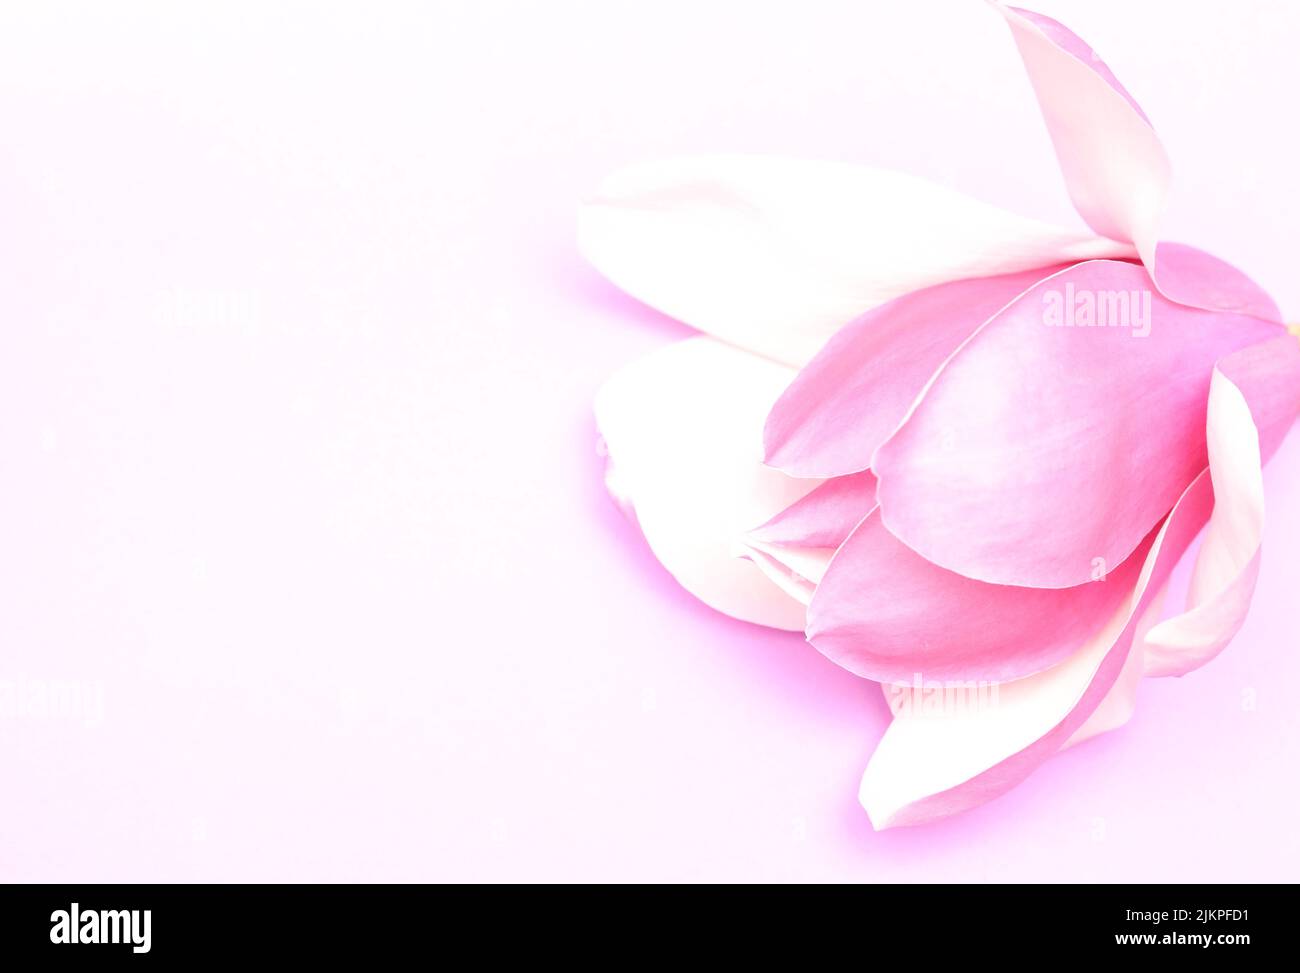 Volontairement surexposé, soufflé de fleur rose pruple magnolia et des pétales sur un fond clair et pâle. Image monochromatique de style d'illustration Banque D'Images